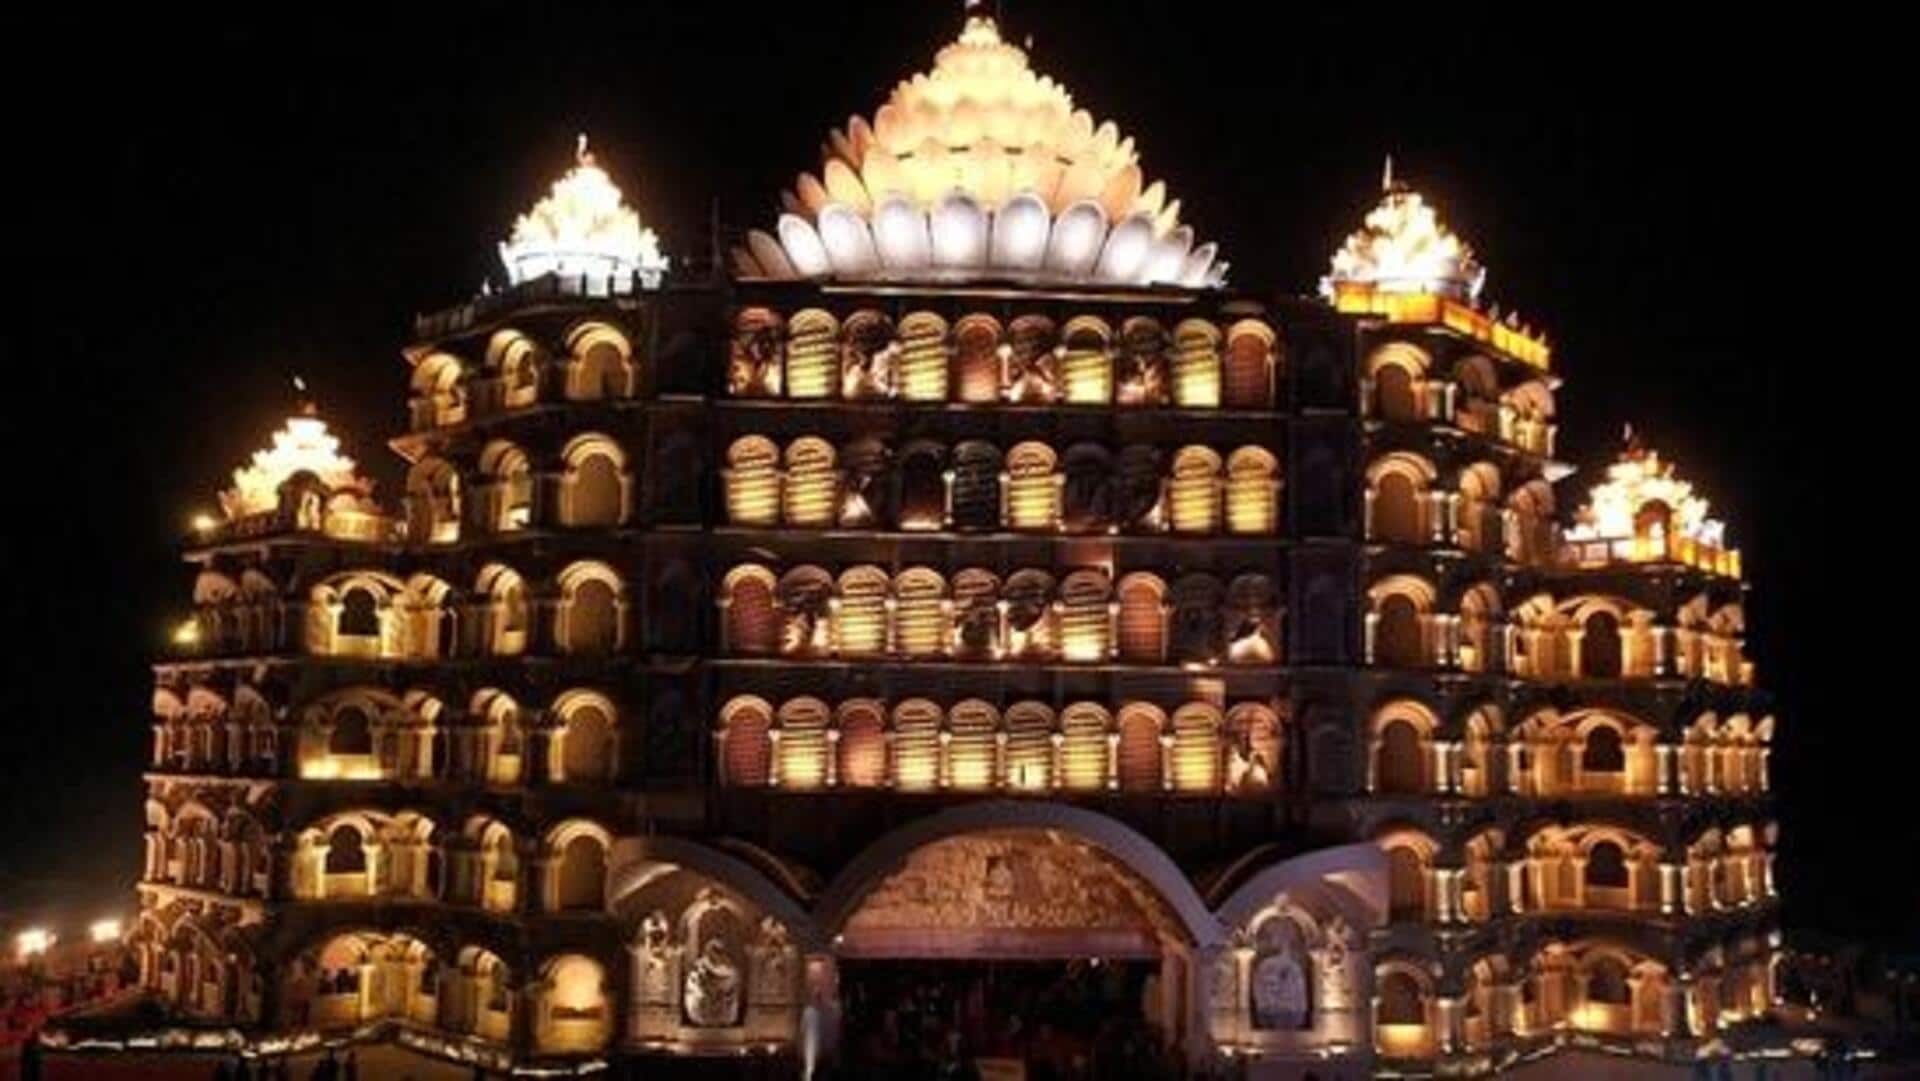 ஸ்வர்வேத் மகாமந்திர்: உலகின் மிகப்பெரிய தியான மையம் பற்றிய சில தகவல்கள் 